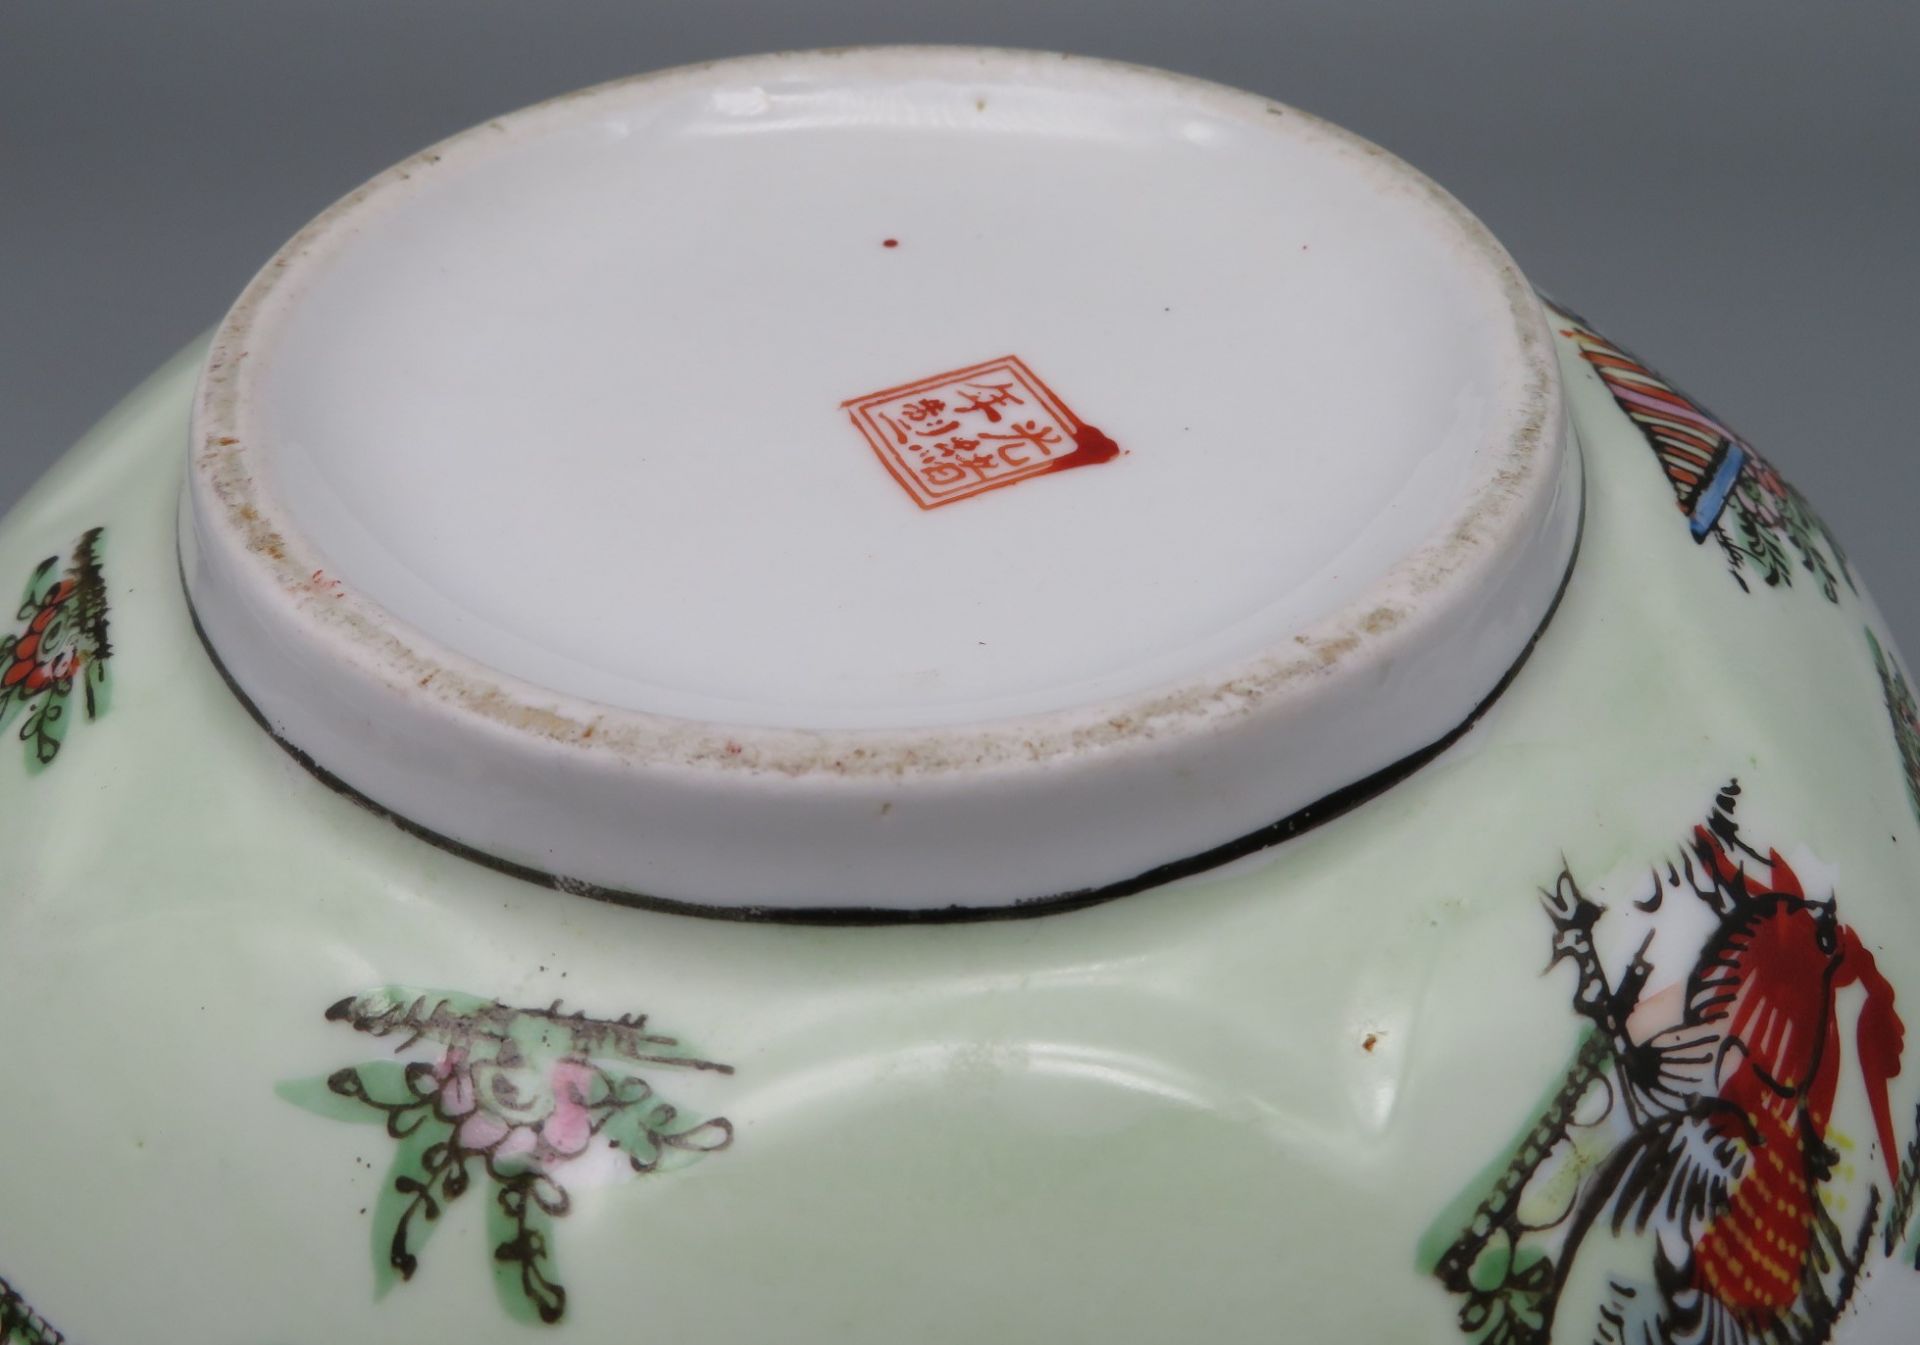 Schale, China, 20. Jahrhundert, Weißporzellan mit polychromem Dekor, gem., h 10 cm, d 25 cm. - Image 2 of 2